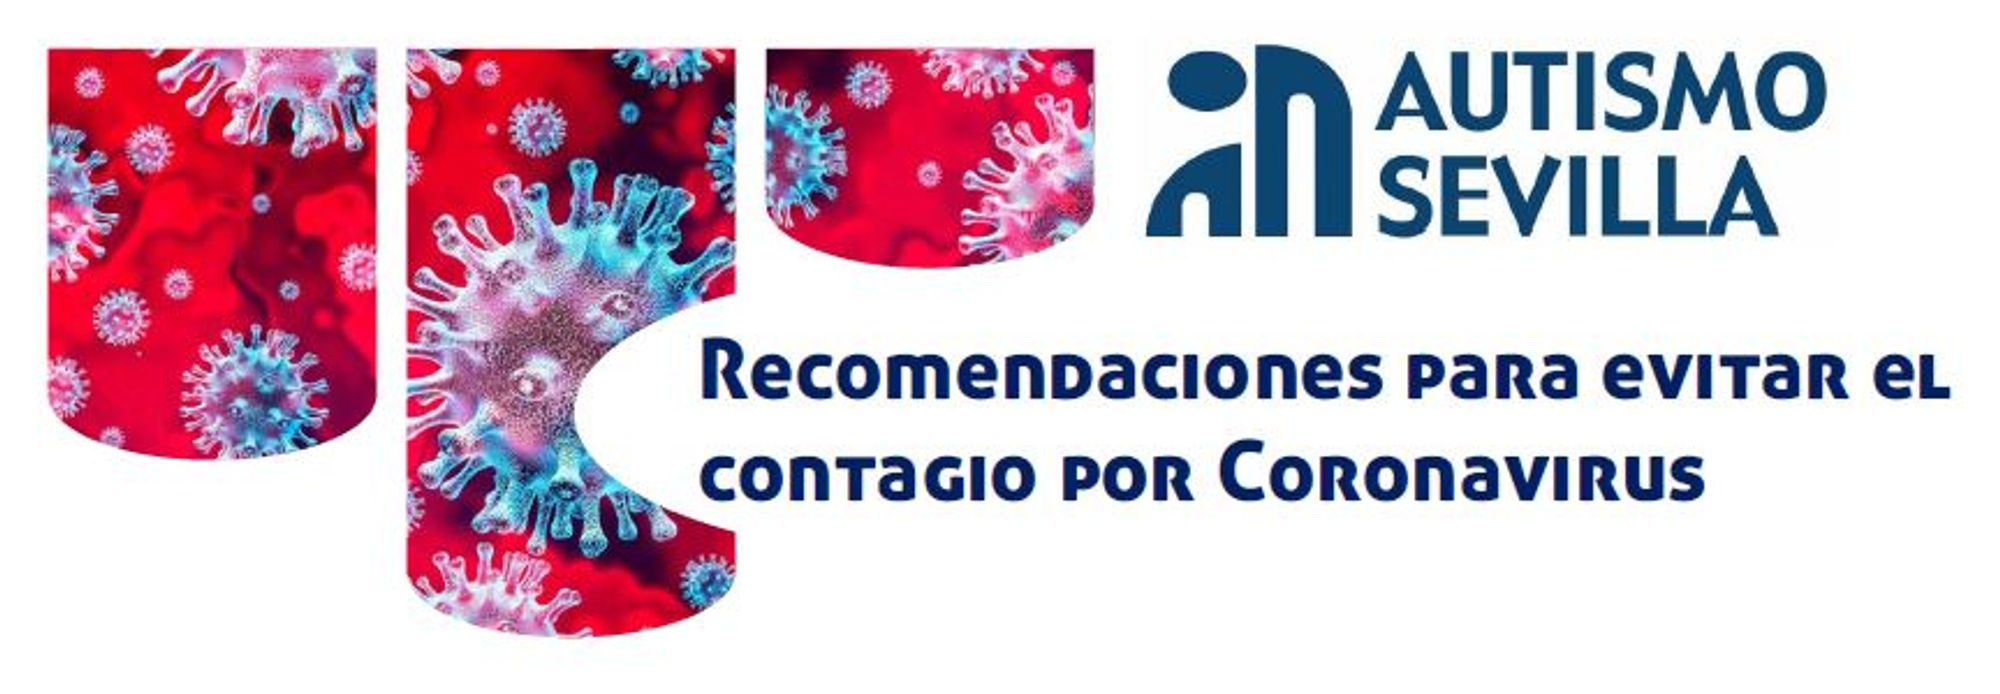 Recomendaciones para evitar el contagio por Coronavirus